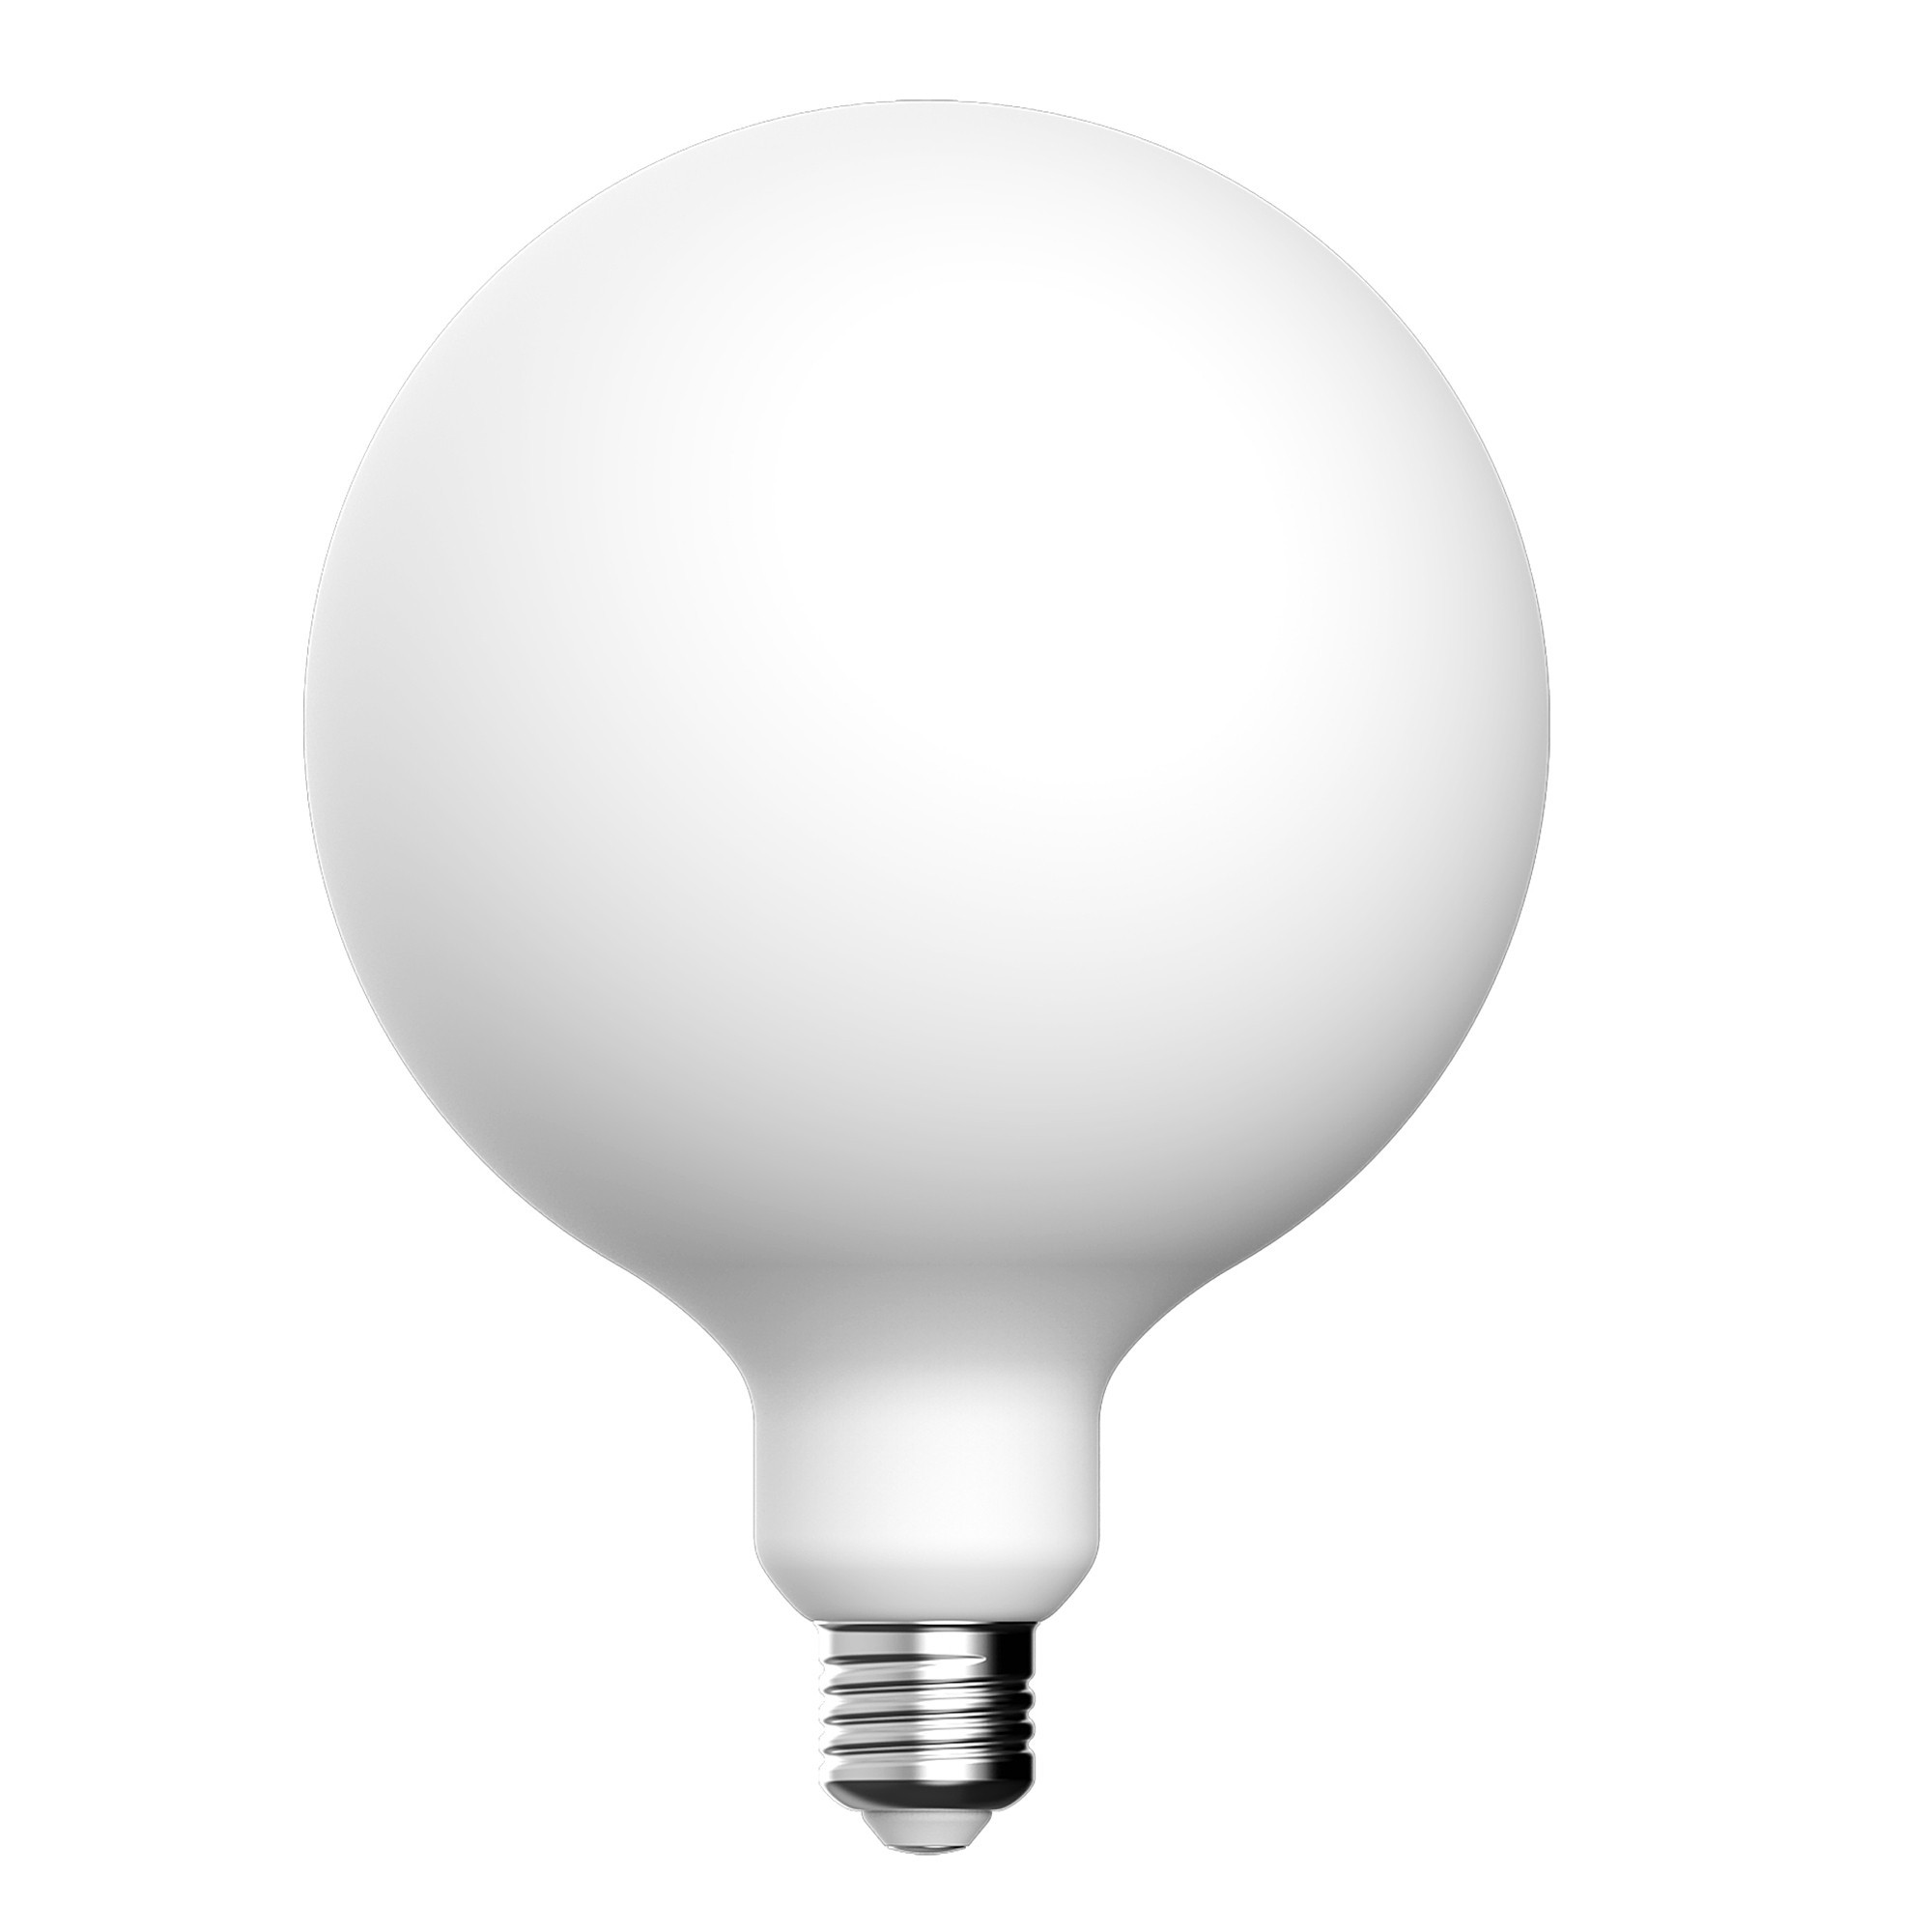 P05 - LED Light Bulb G150, E27, 7W, 2700K, 640Lm, porcelain effect